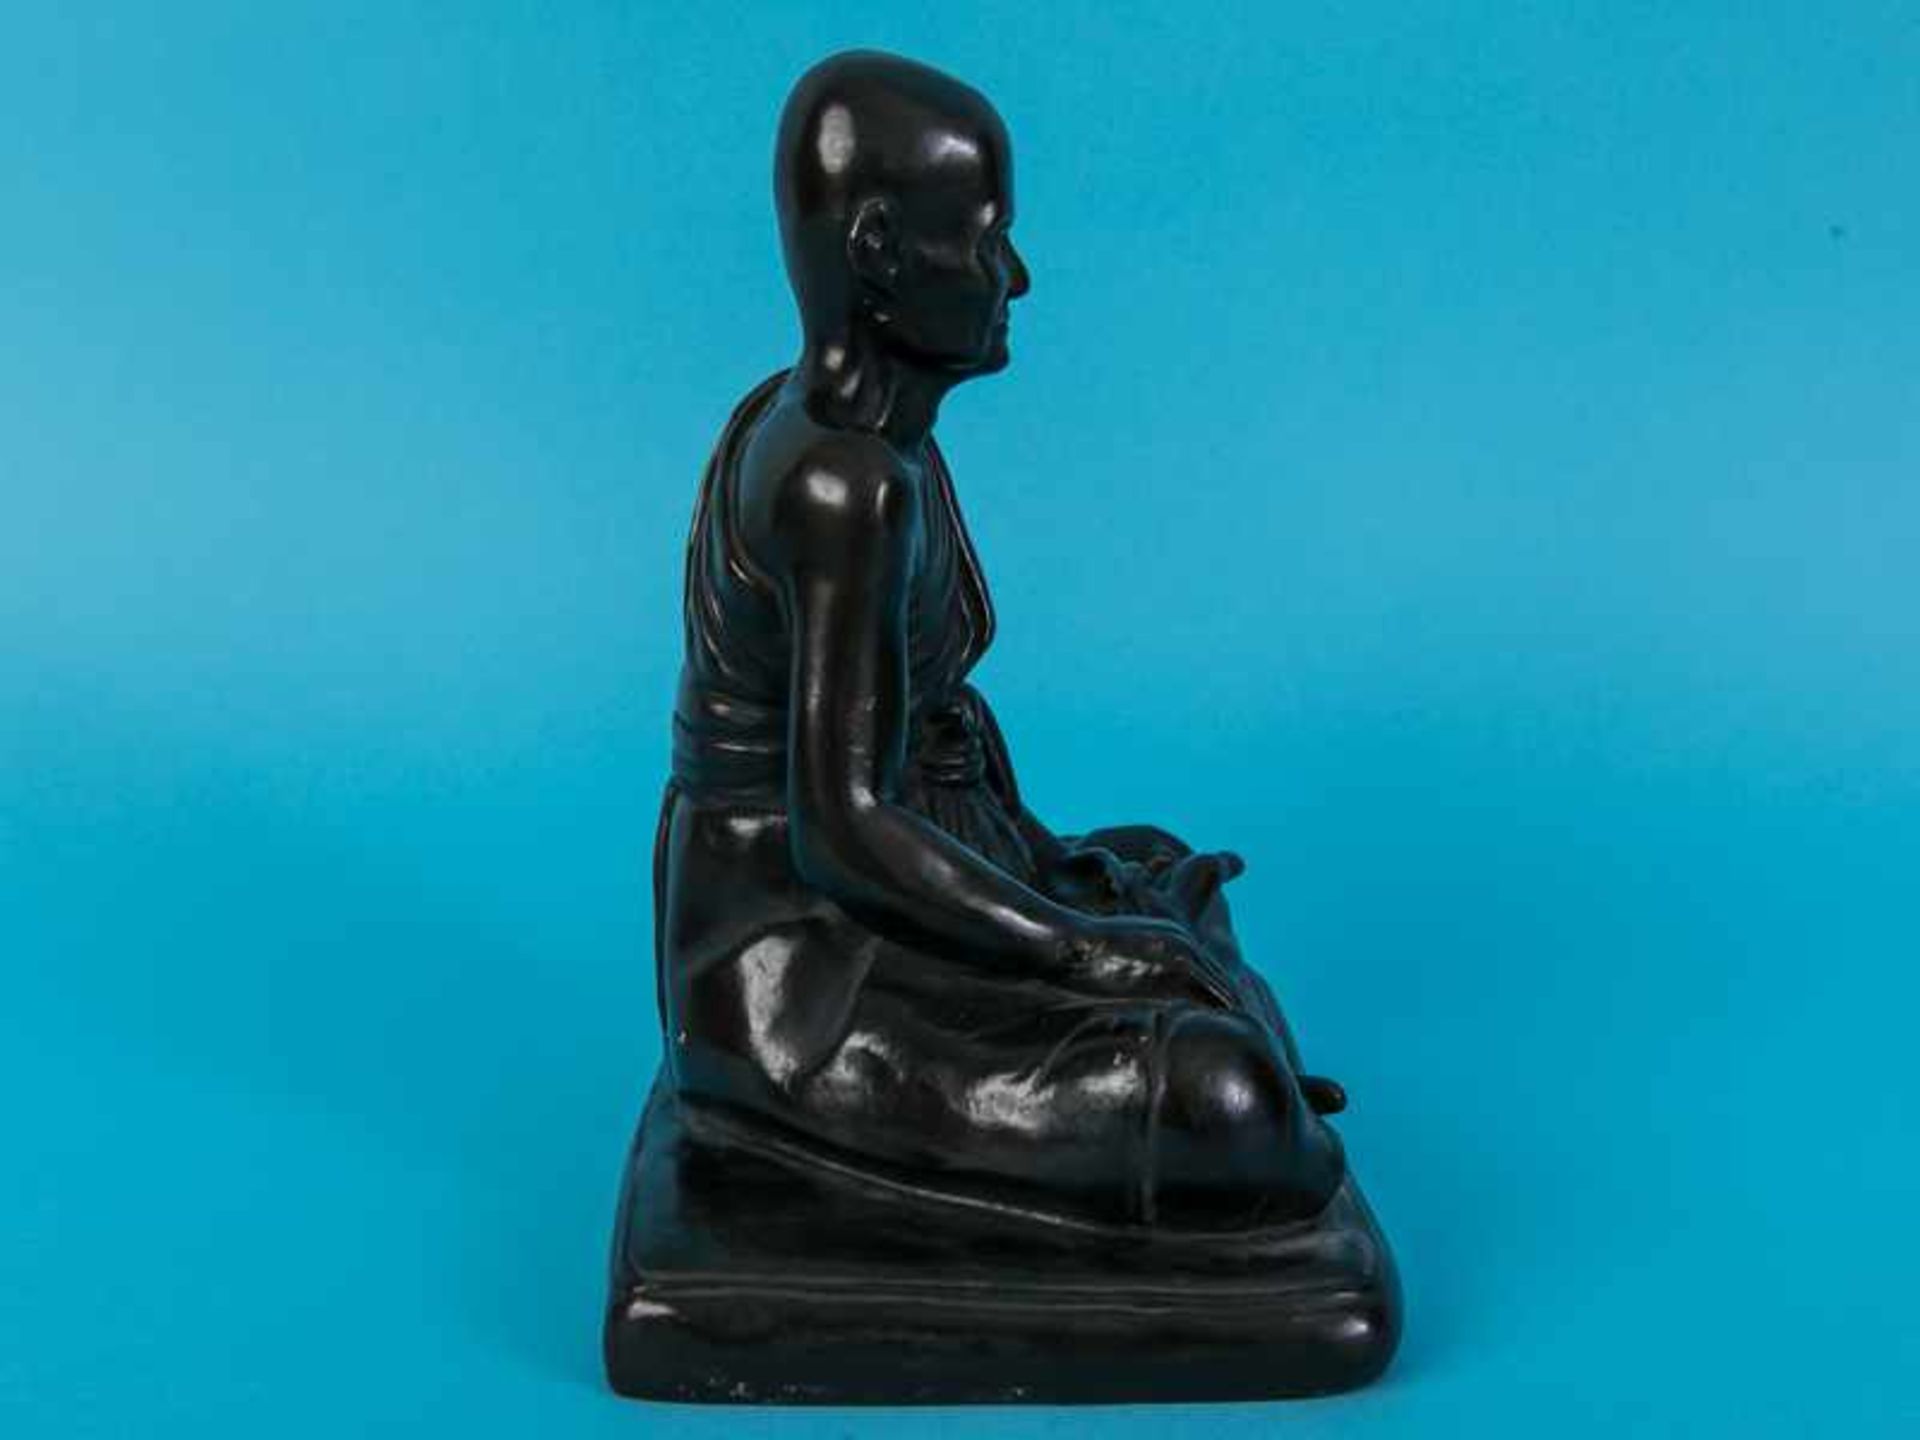 Figurenplastik "Buddhistischer Mönch", Thailand, 19./20. Jh. Bronze, dunkelbraunfarbig patiniert; - Bild 6 aus 9